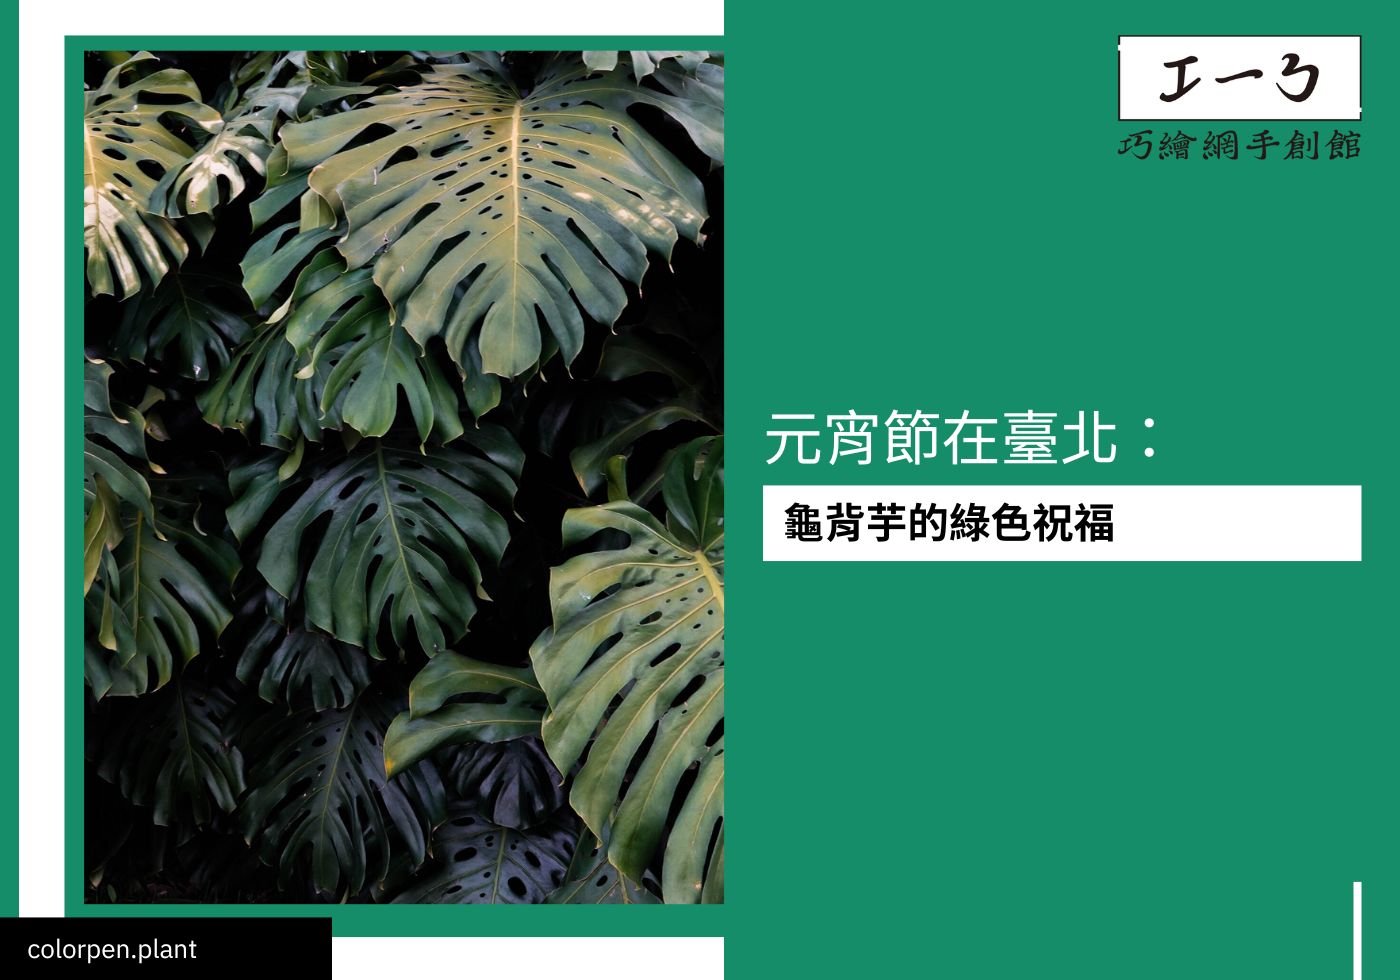 閱讀更多文章 元宵節在臺北：龜背芋的綠色祝福